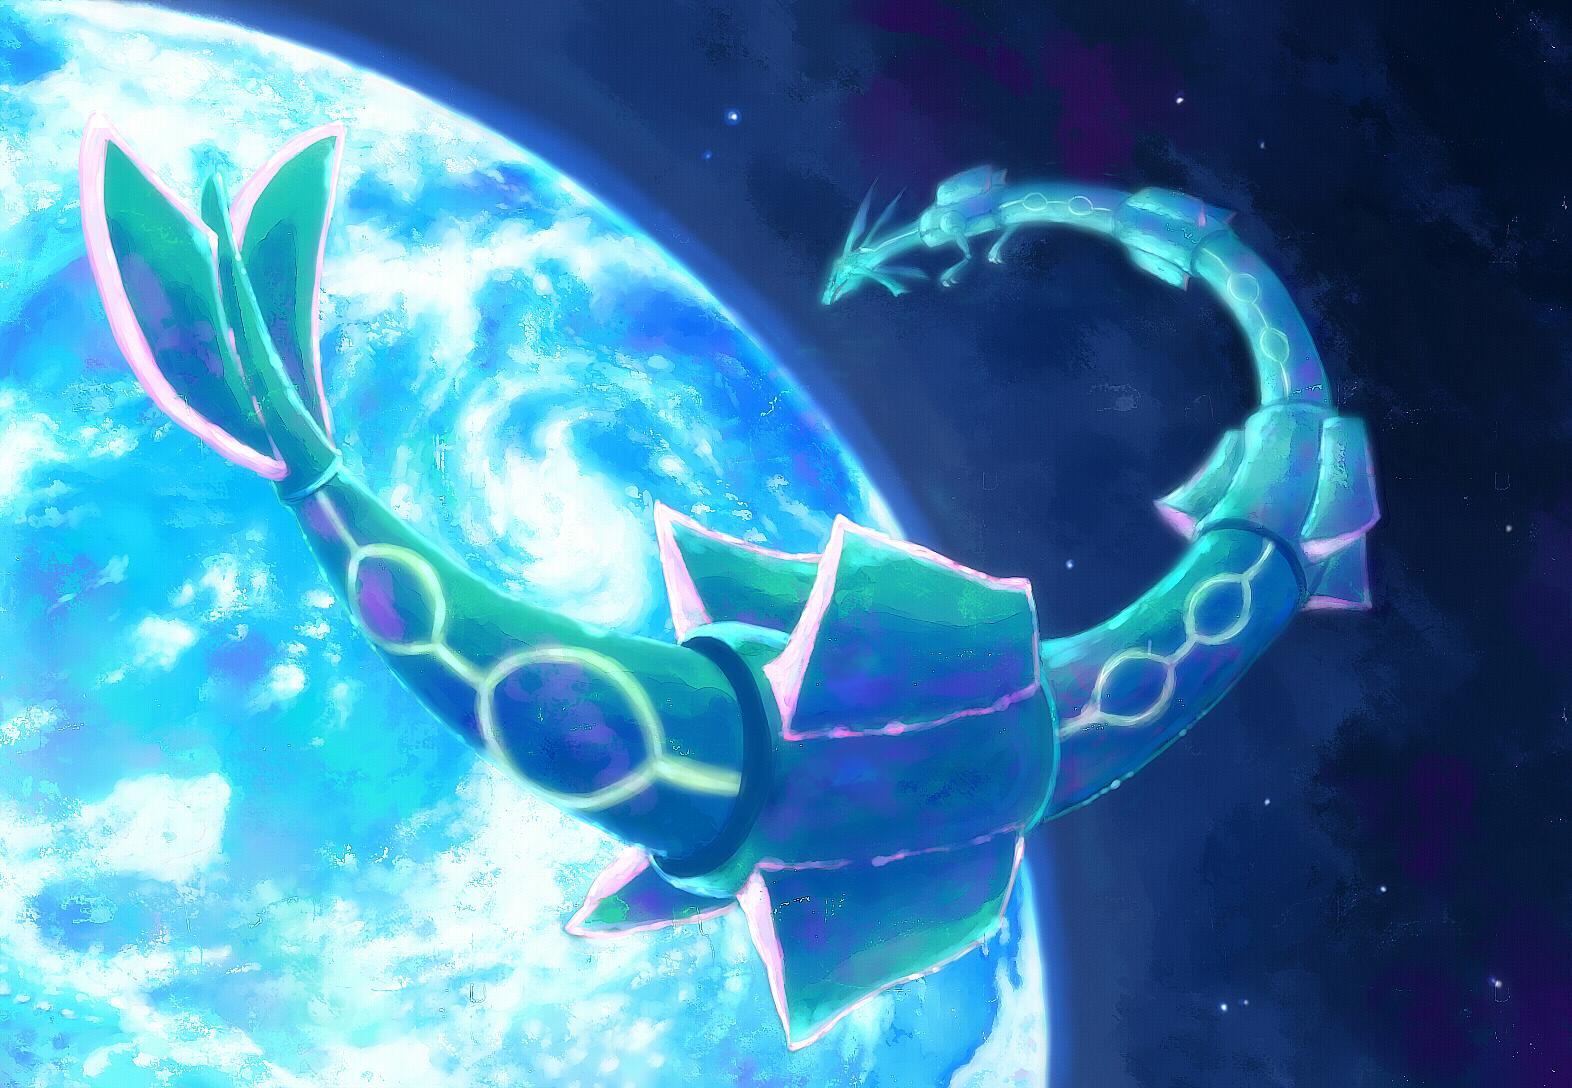 Download free Neon Pokemon Rayquaza Wallpaper 